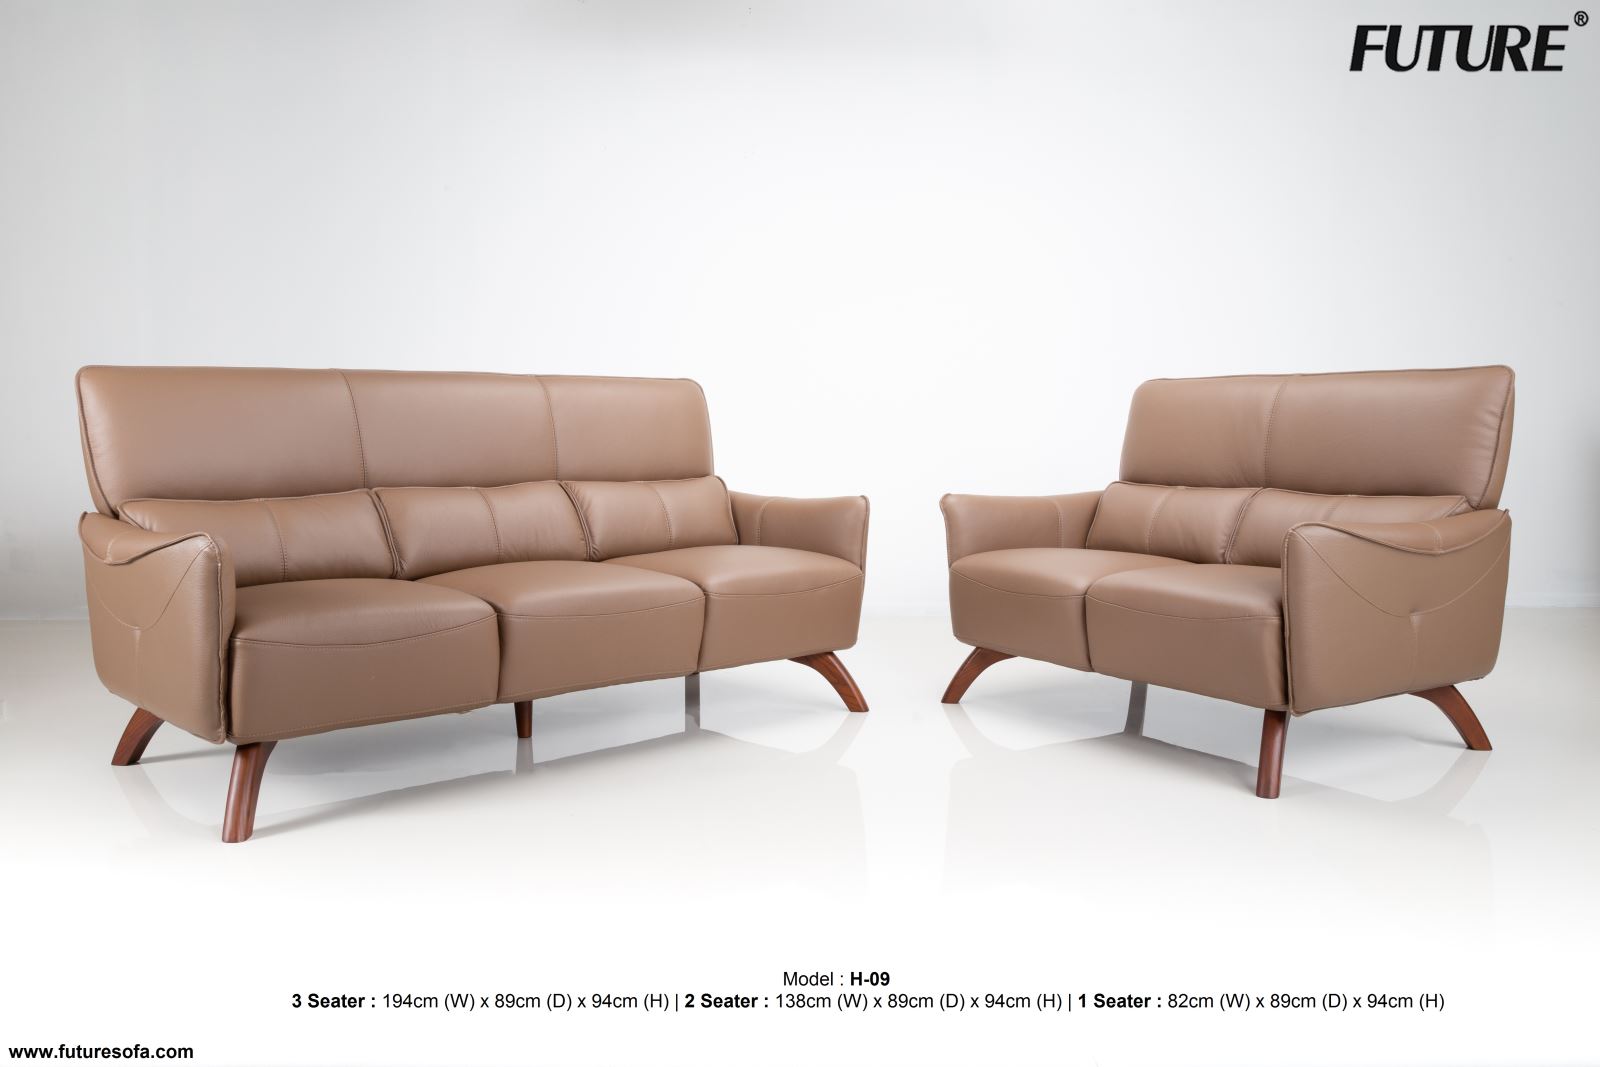 Sofa văng dài - Sự lựa chọn hoàn hảo cho phòng khách nhỏ hẹp - Ảnh 2